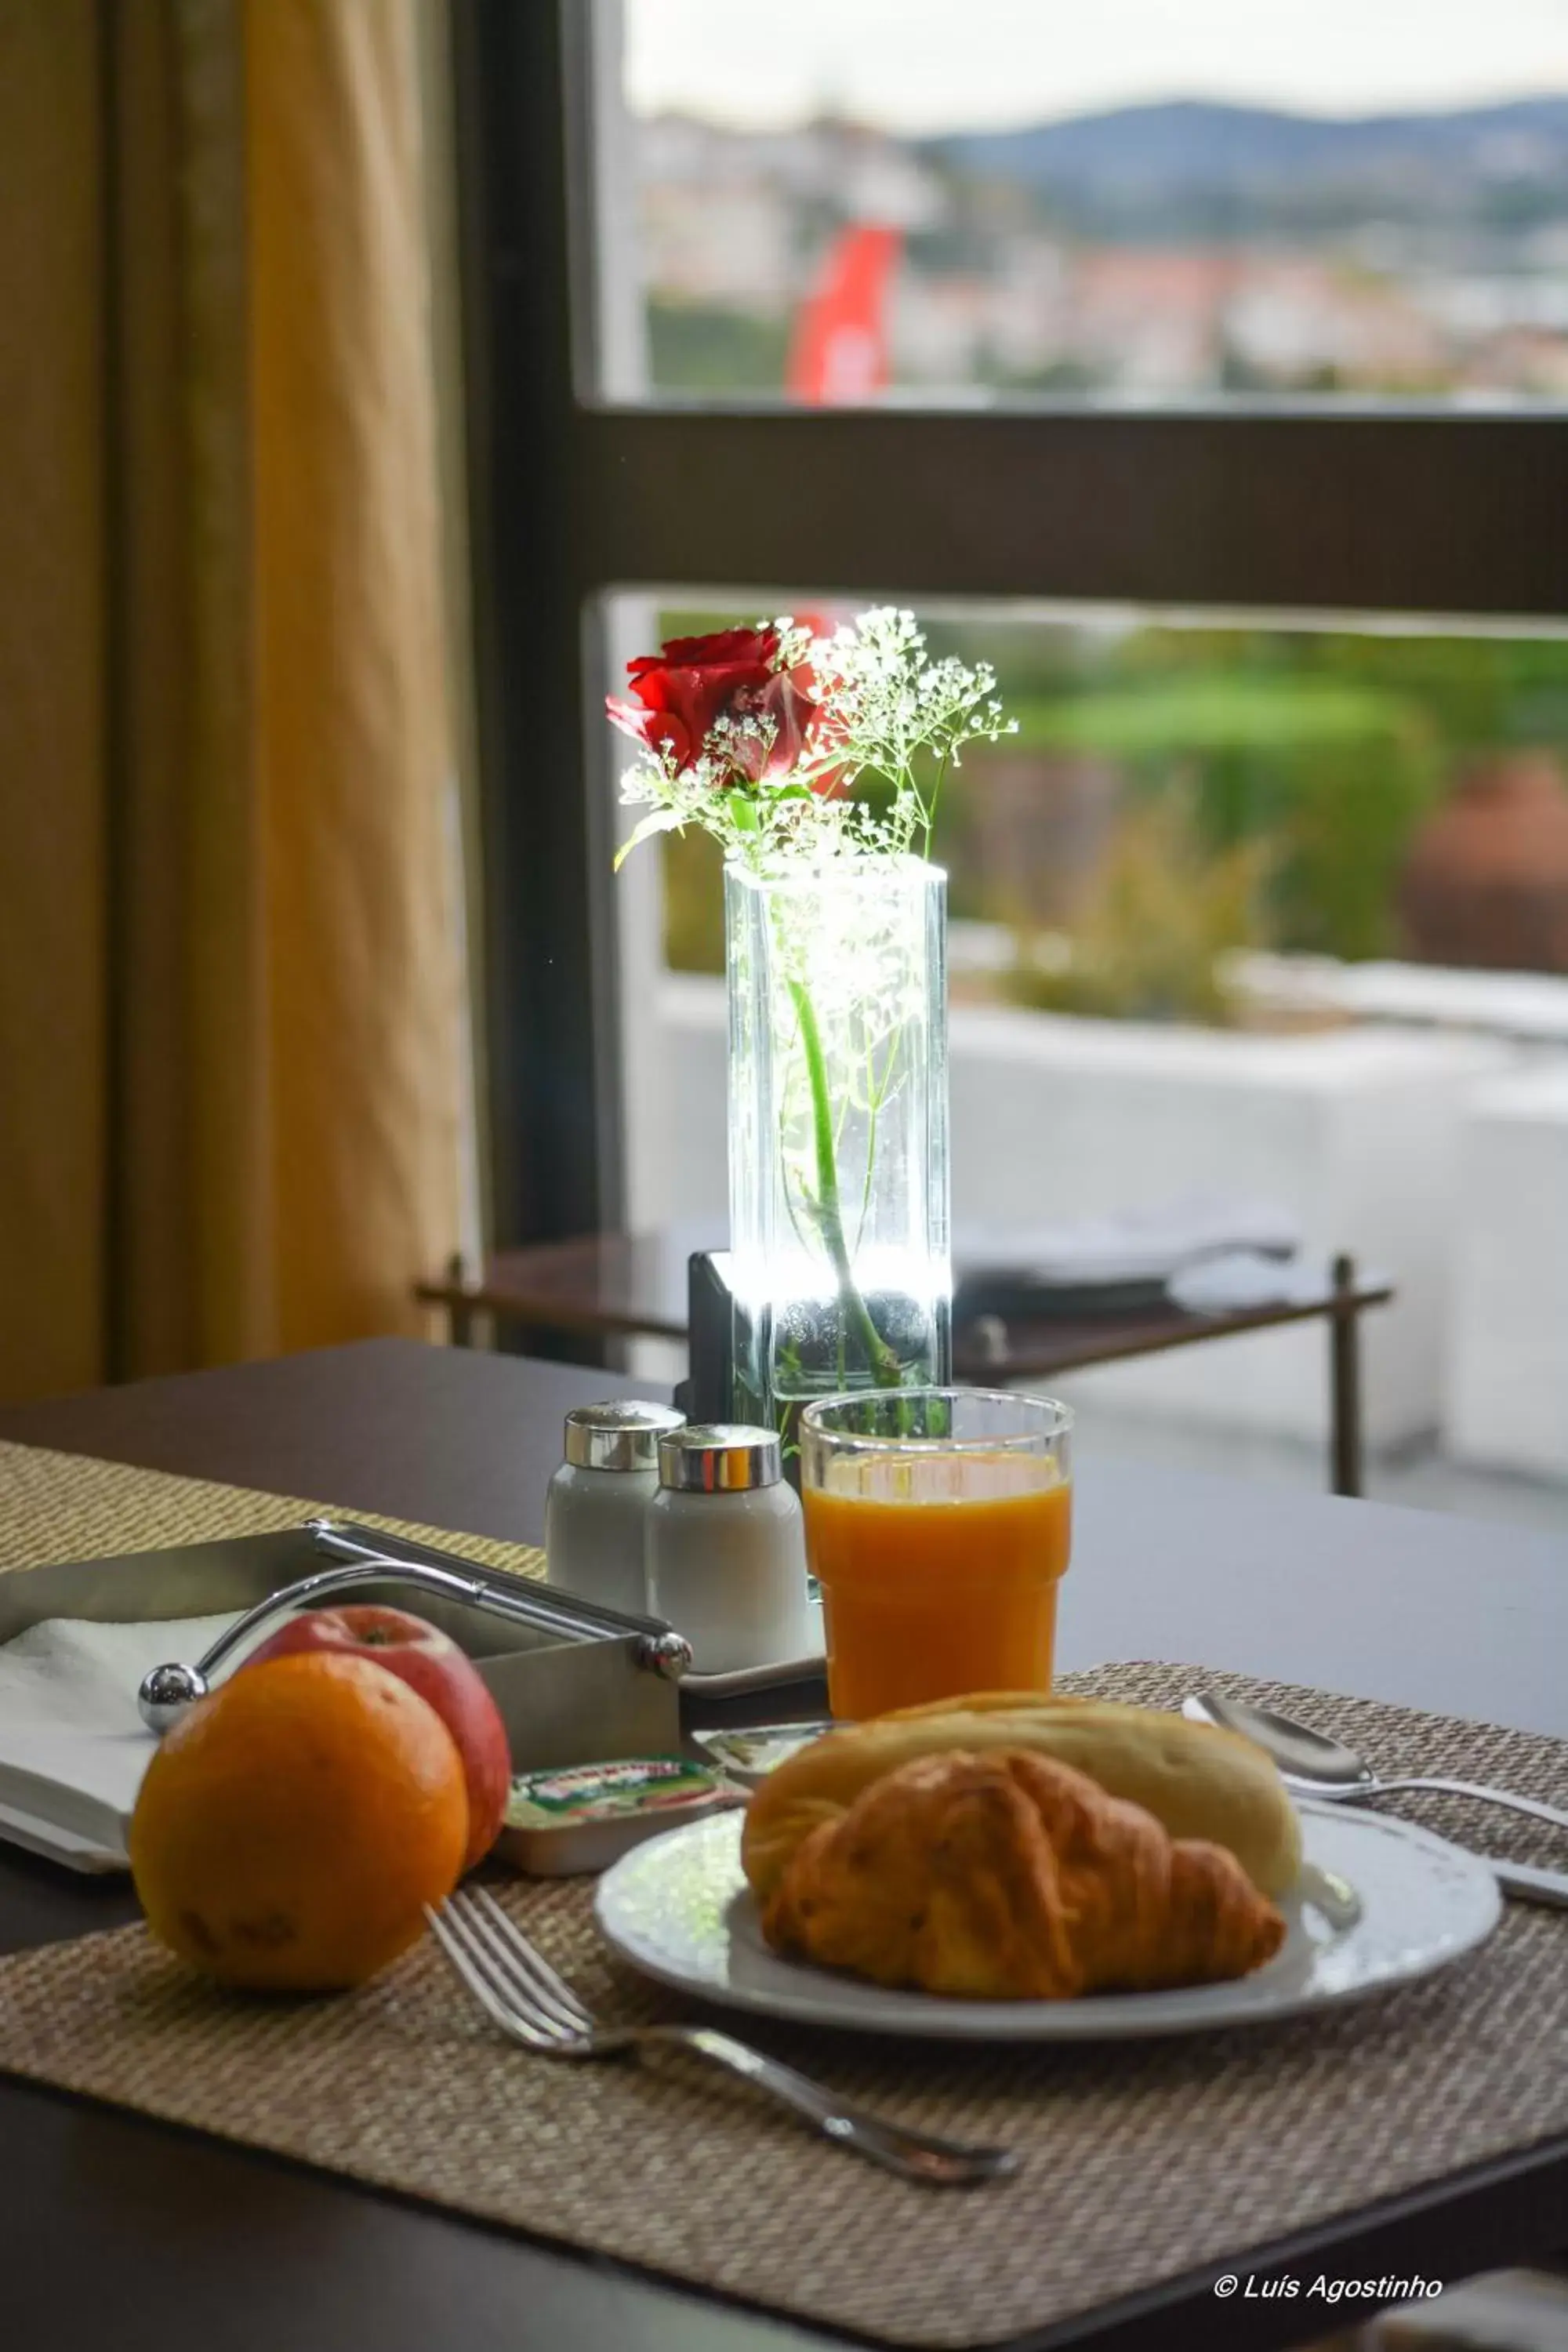 Buffet breakfast, Breakfast in Hotel D. Luis